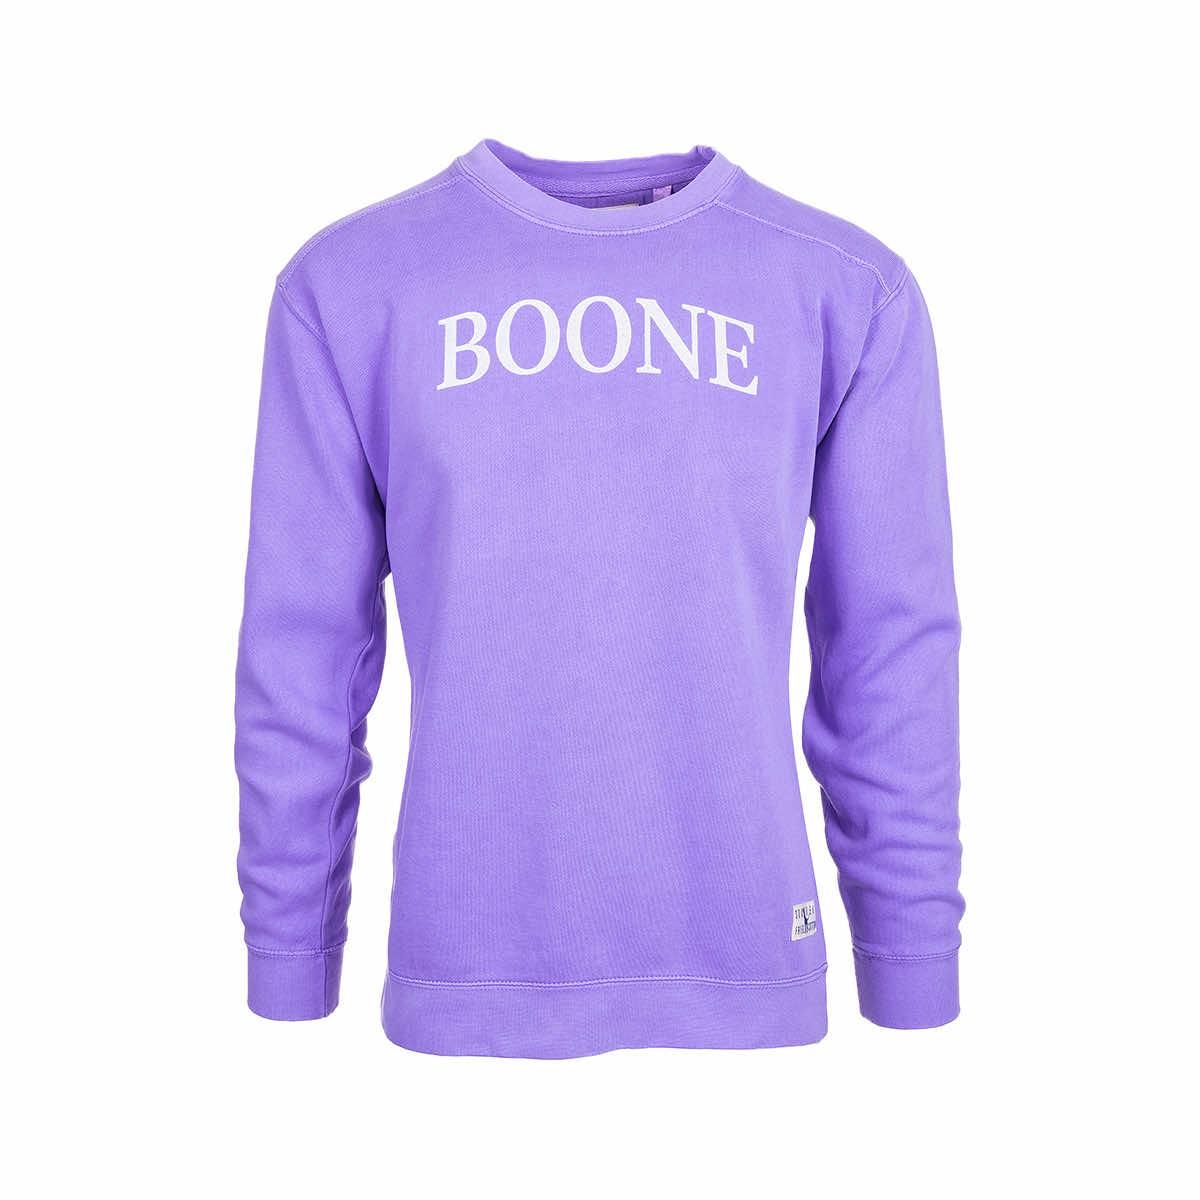 Boone Comfy Crew Neck Sweatshirt